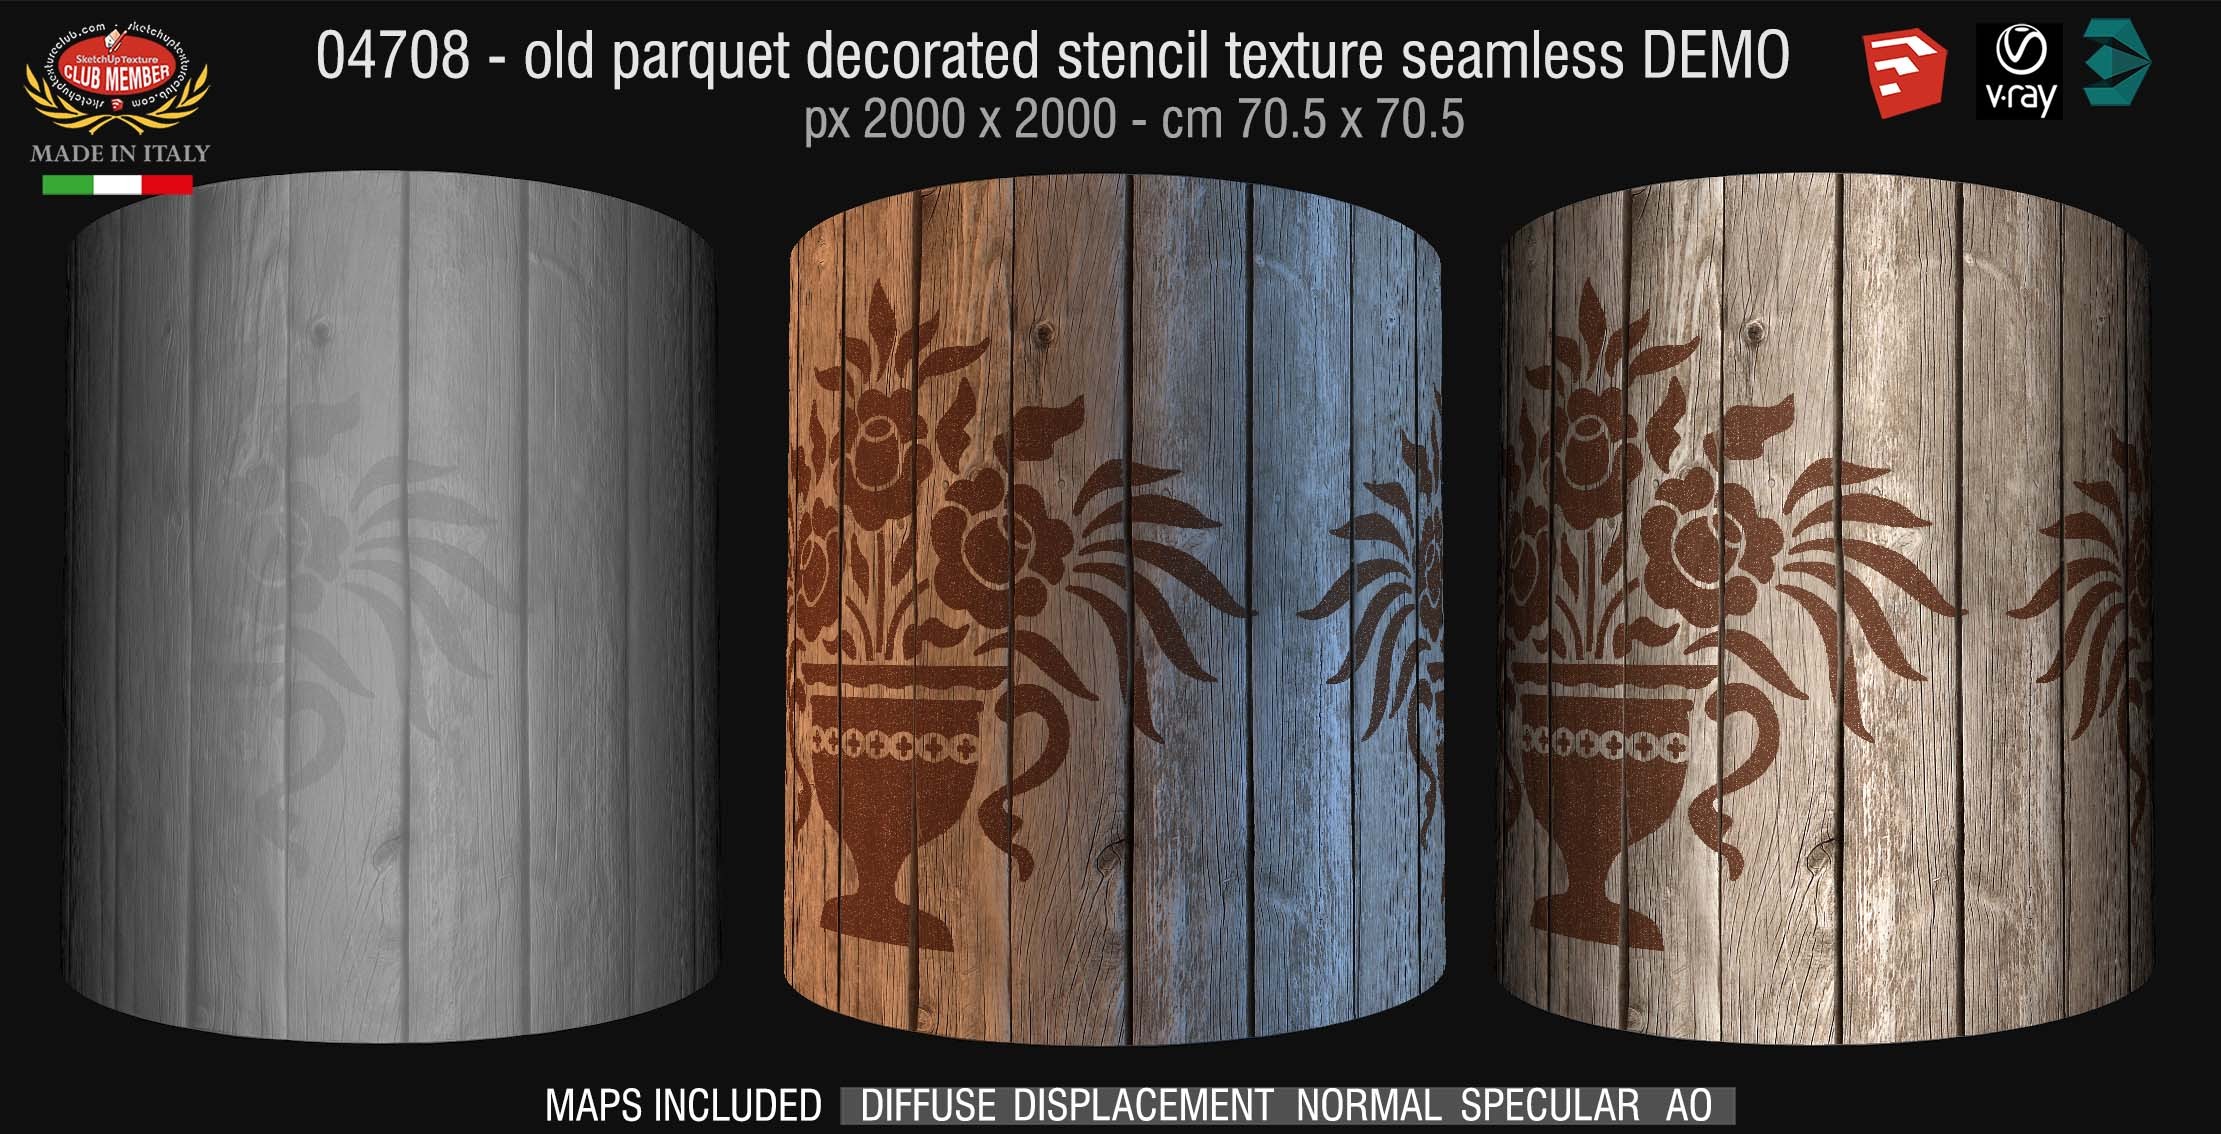 04708 HR Parquet decorated stencil texture seamless + maps DEMO